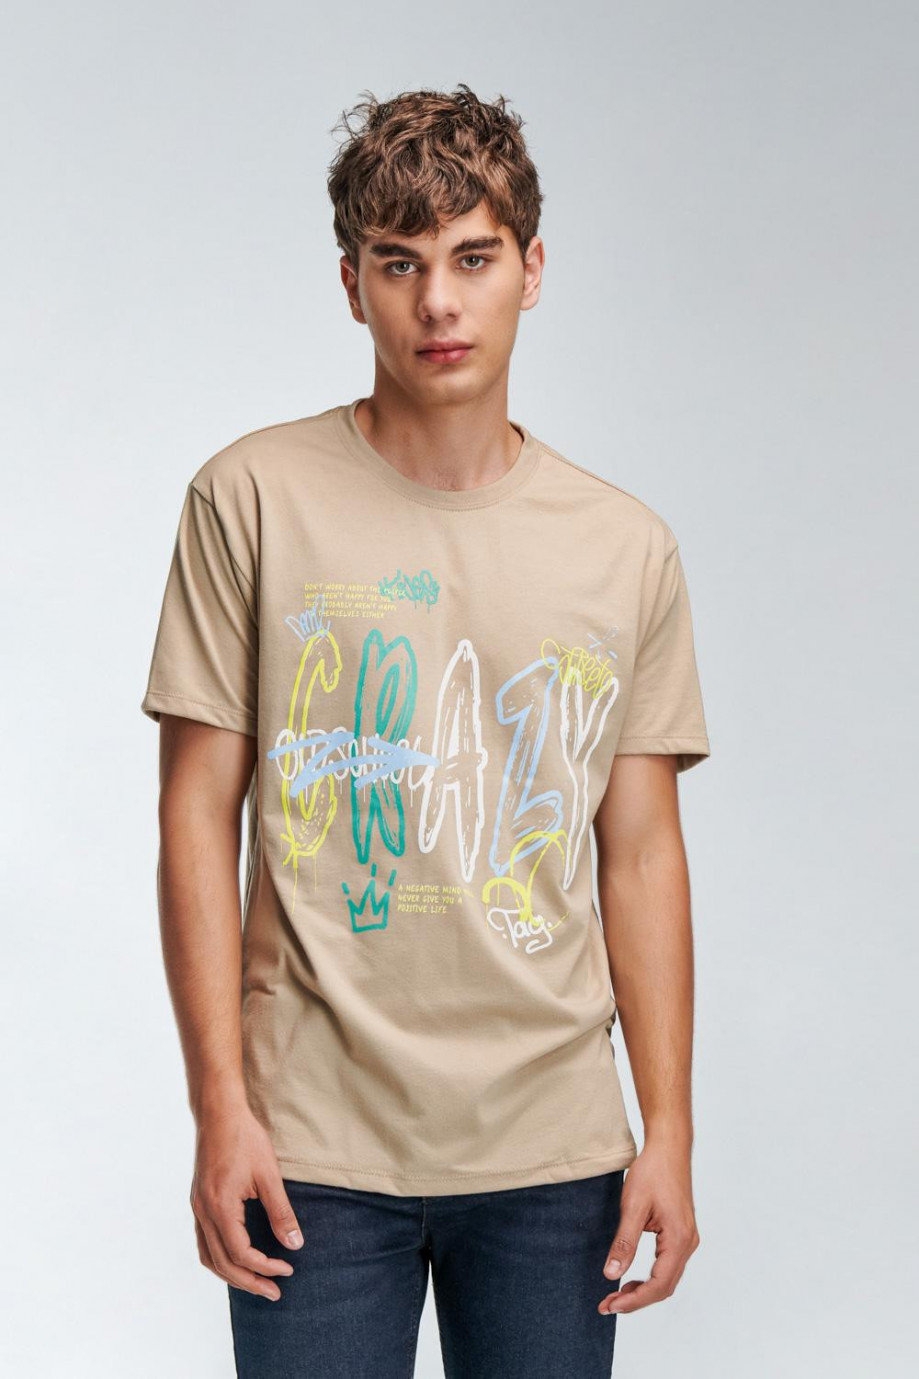 Camiseta unicolor con manga corta y estampados de letras coloridas